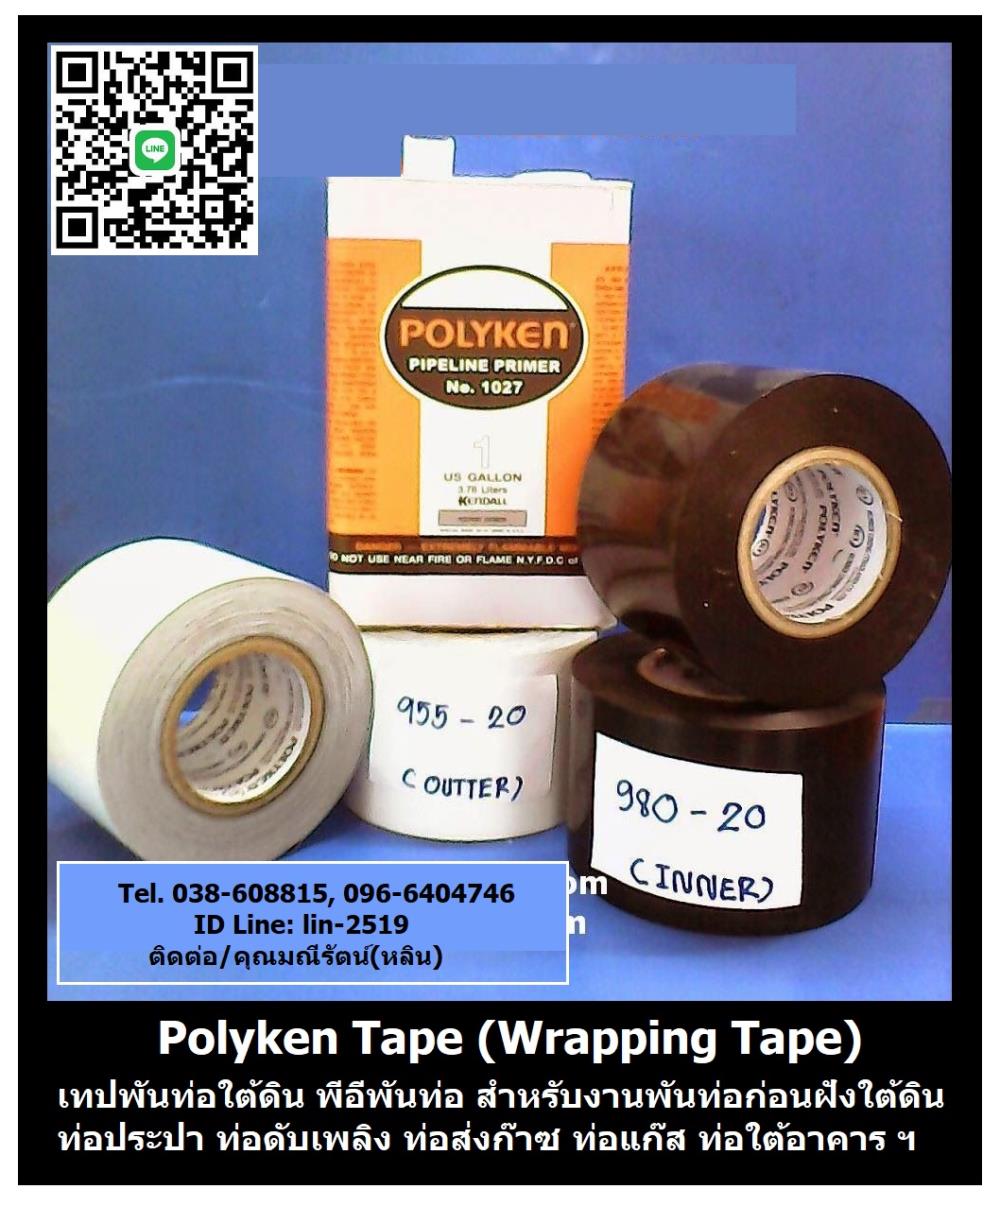 Polyken Wrapping Tape No.980-20 (Black) เทปพันท่อใต้ดินสีดำ เป็นเทปพันชั้นแรกหลังจากทาน้ำยารองพื้น